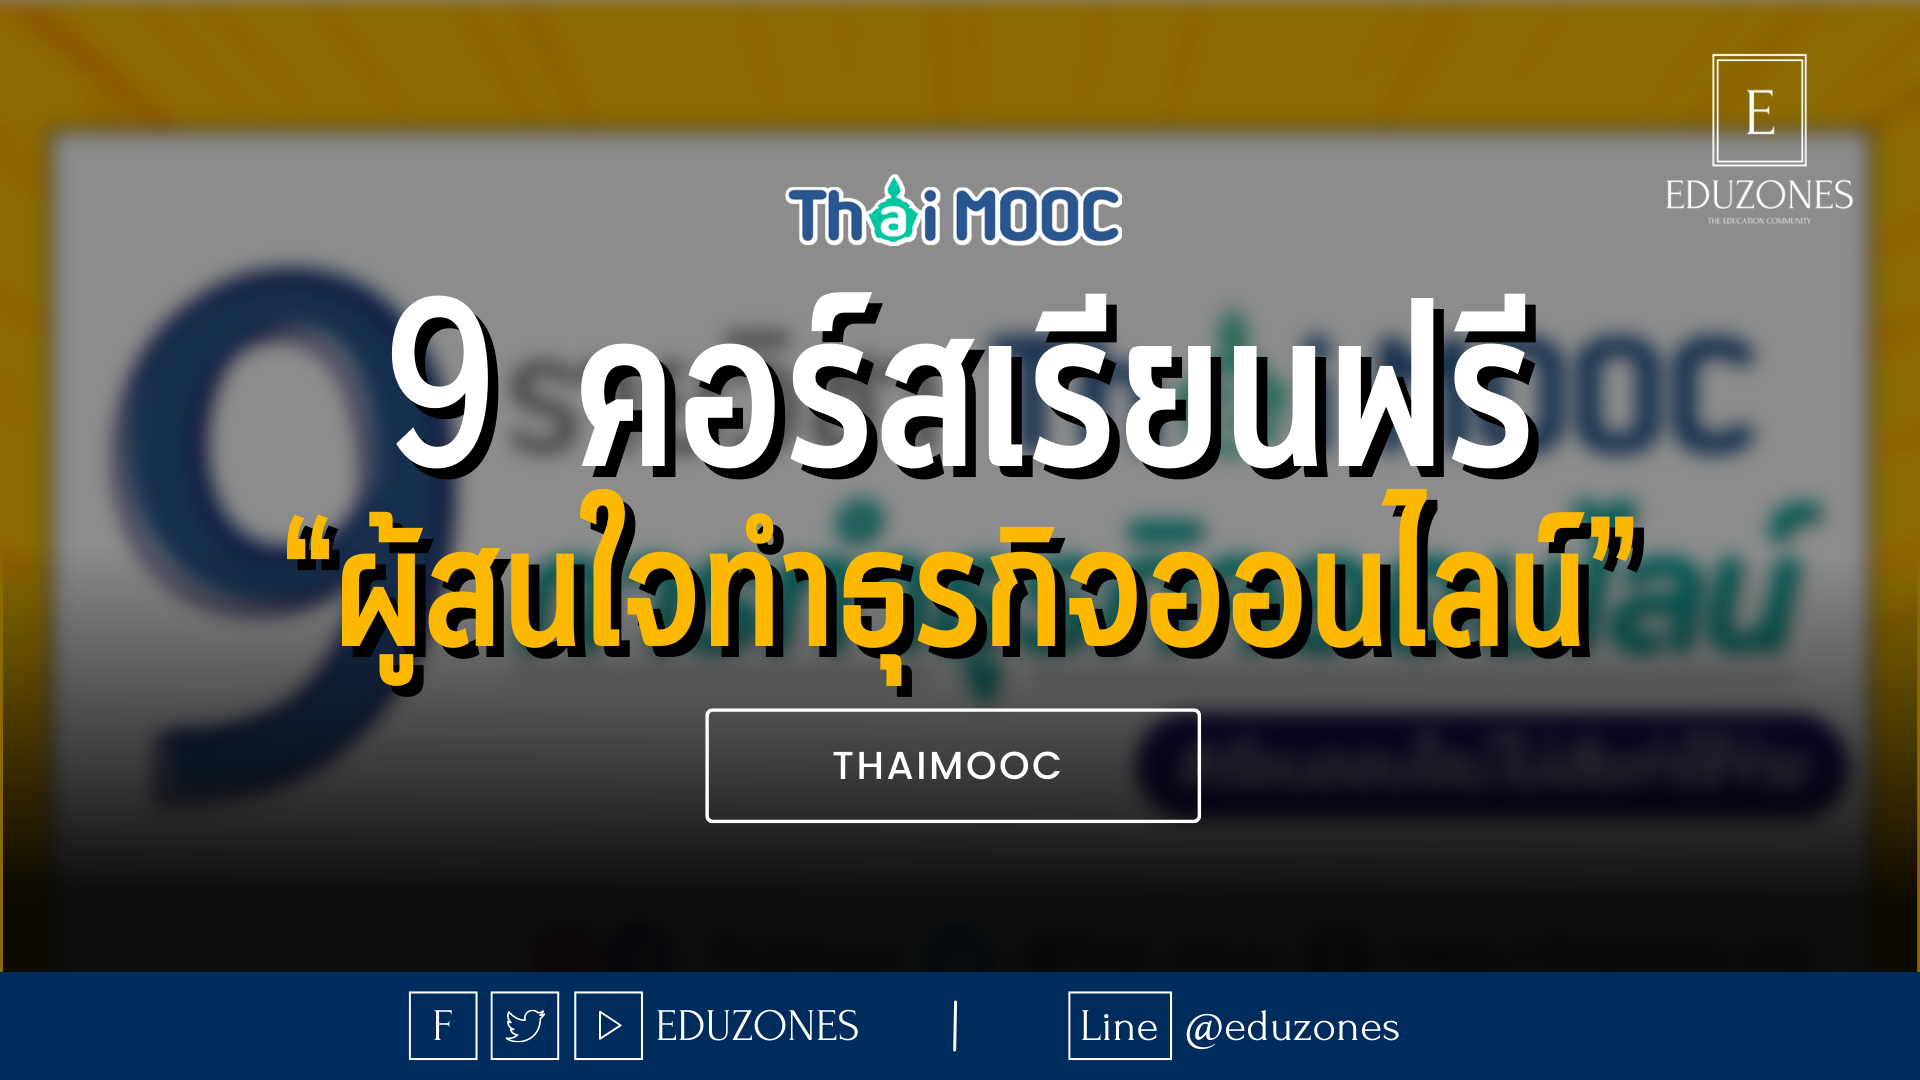 9 คอร์สเรียนฟรี “ผู้สนใจทำธุรกิจออนไลน์” - THAIMOOC